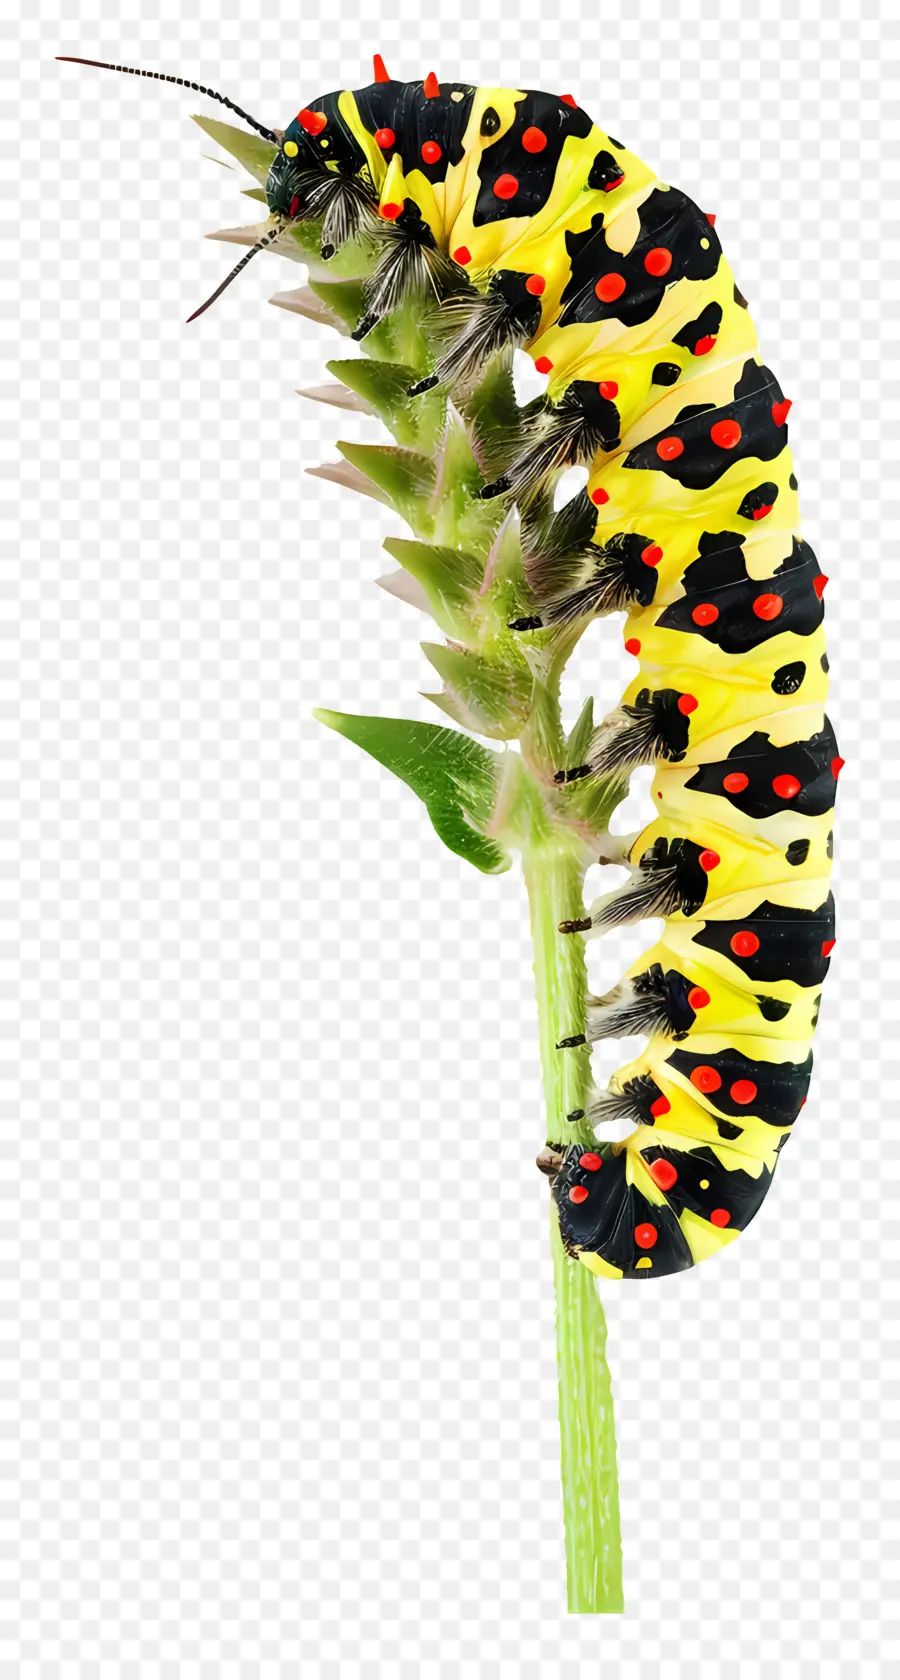 Caterpillar Insekten Garten Natur Wildlife - Große Raupe mit gelben, schwarzen, roten Flecken